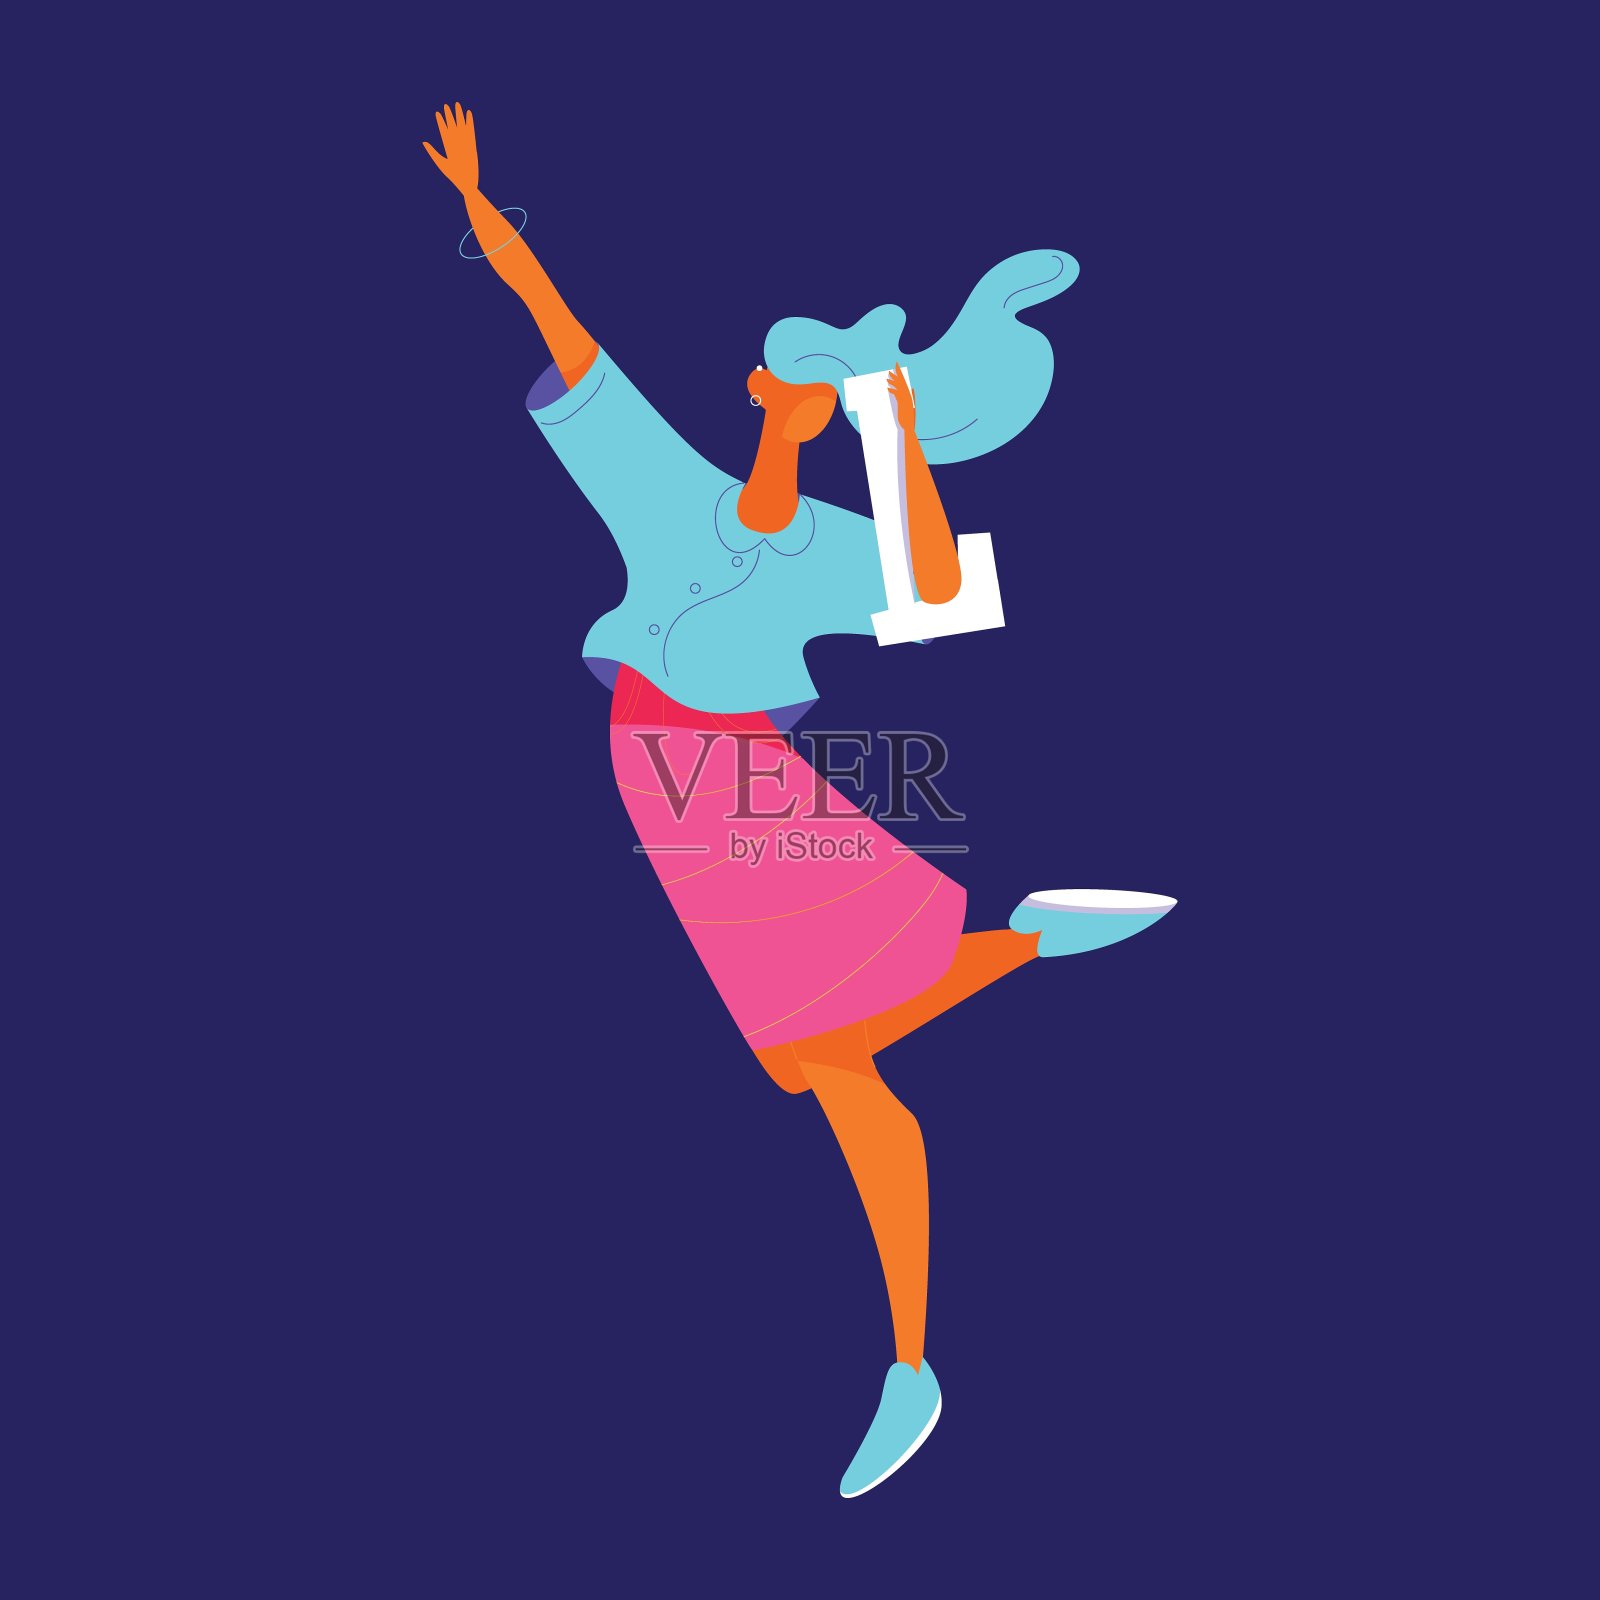 年轻女子用英文大写字母l蹦蹦跳跳。用线条装饰的扁平人物插画图片素材